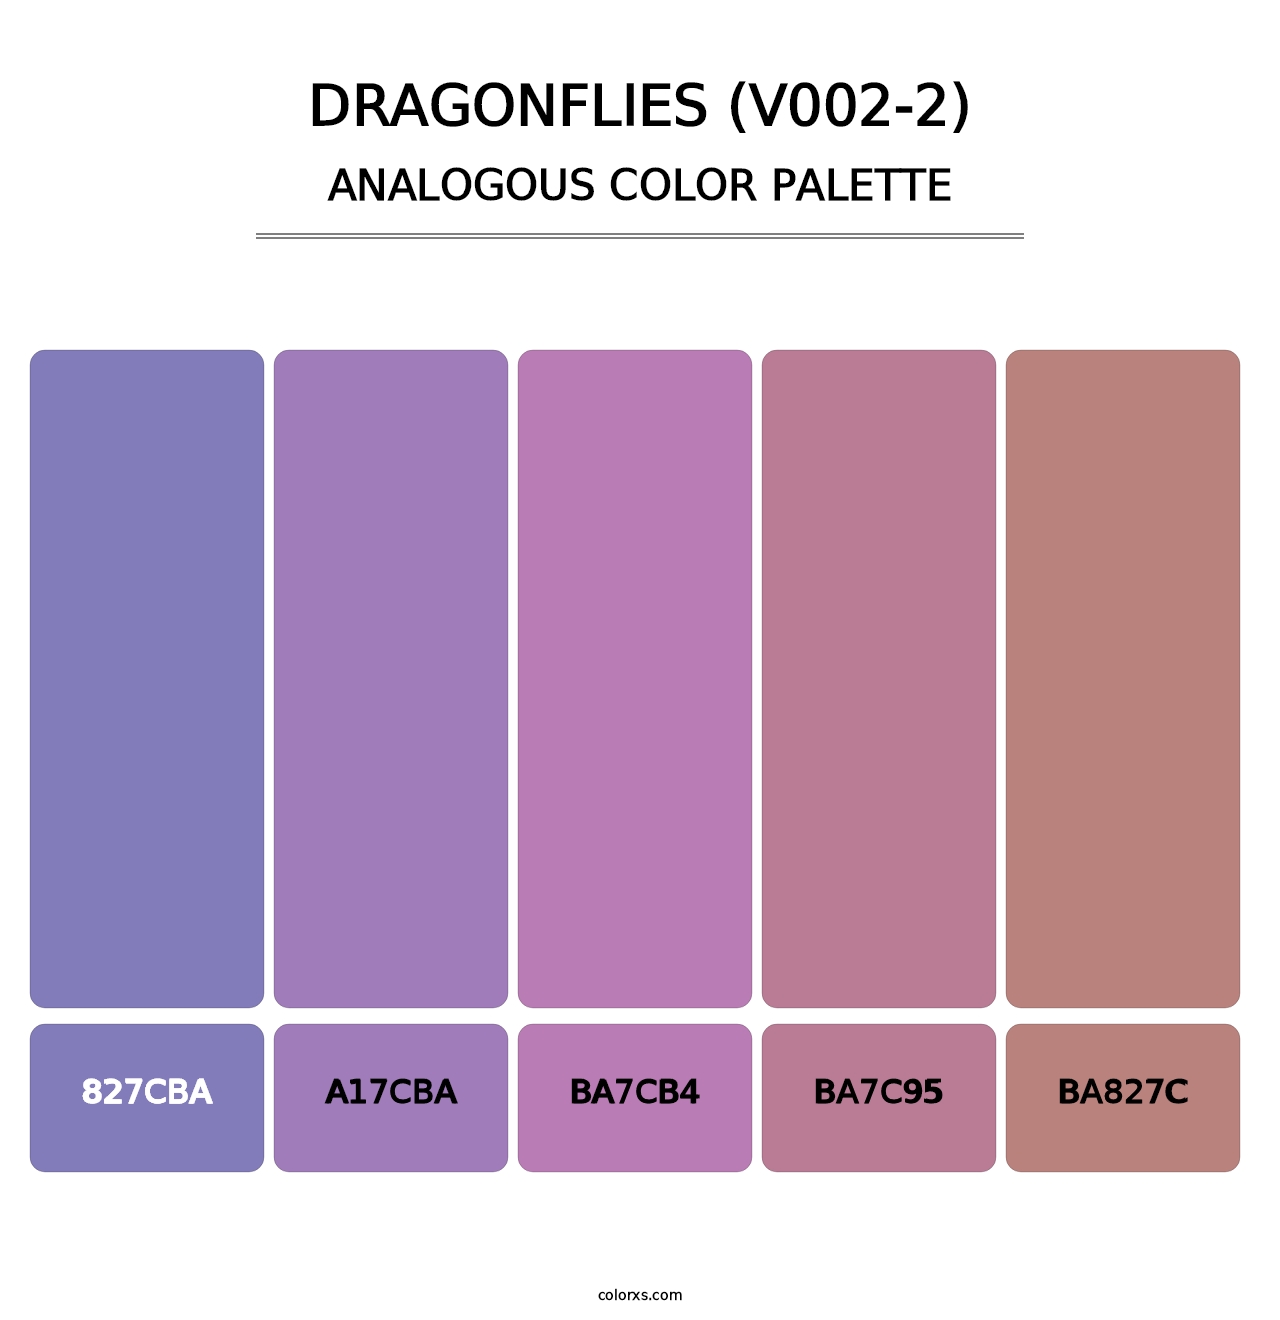 Dragonflies (V002-2) - Analogous Color Palette